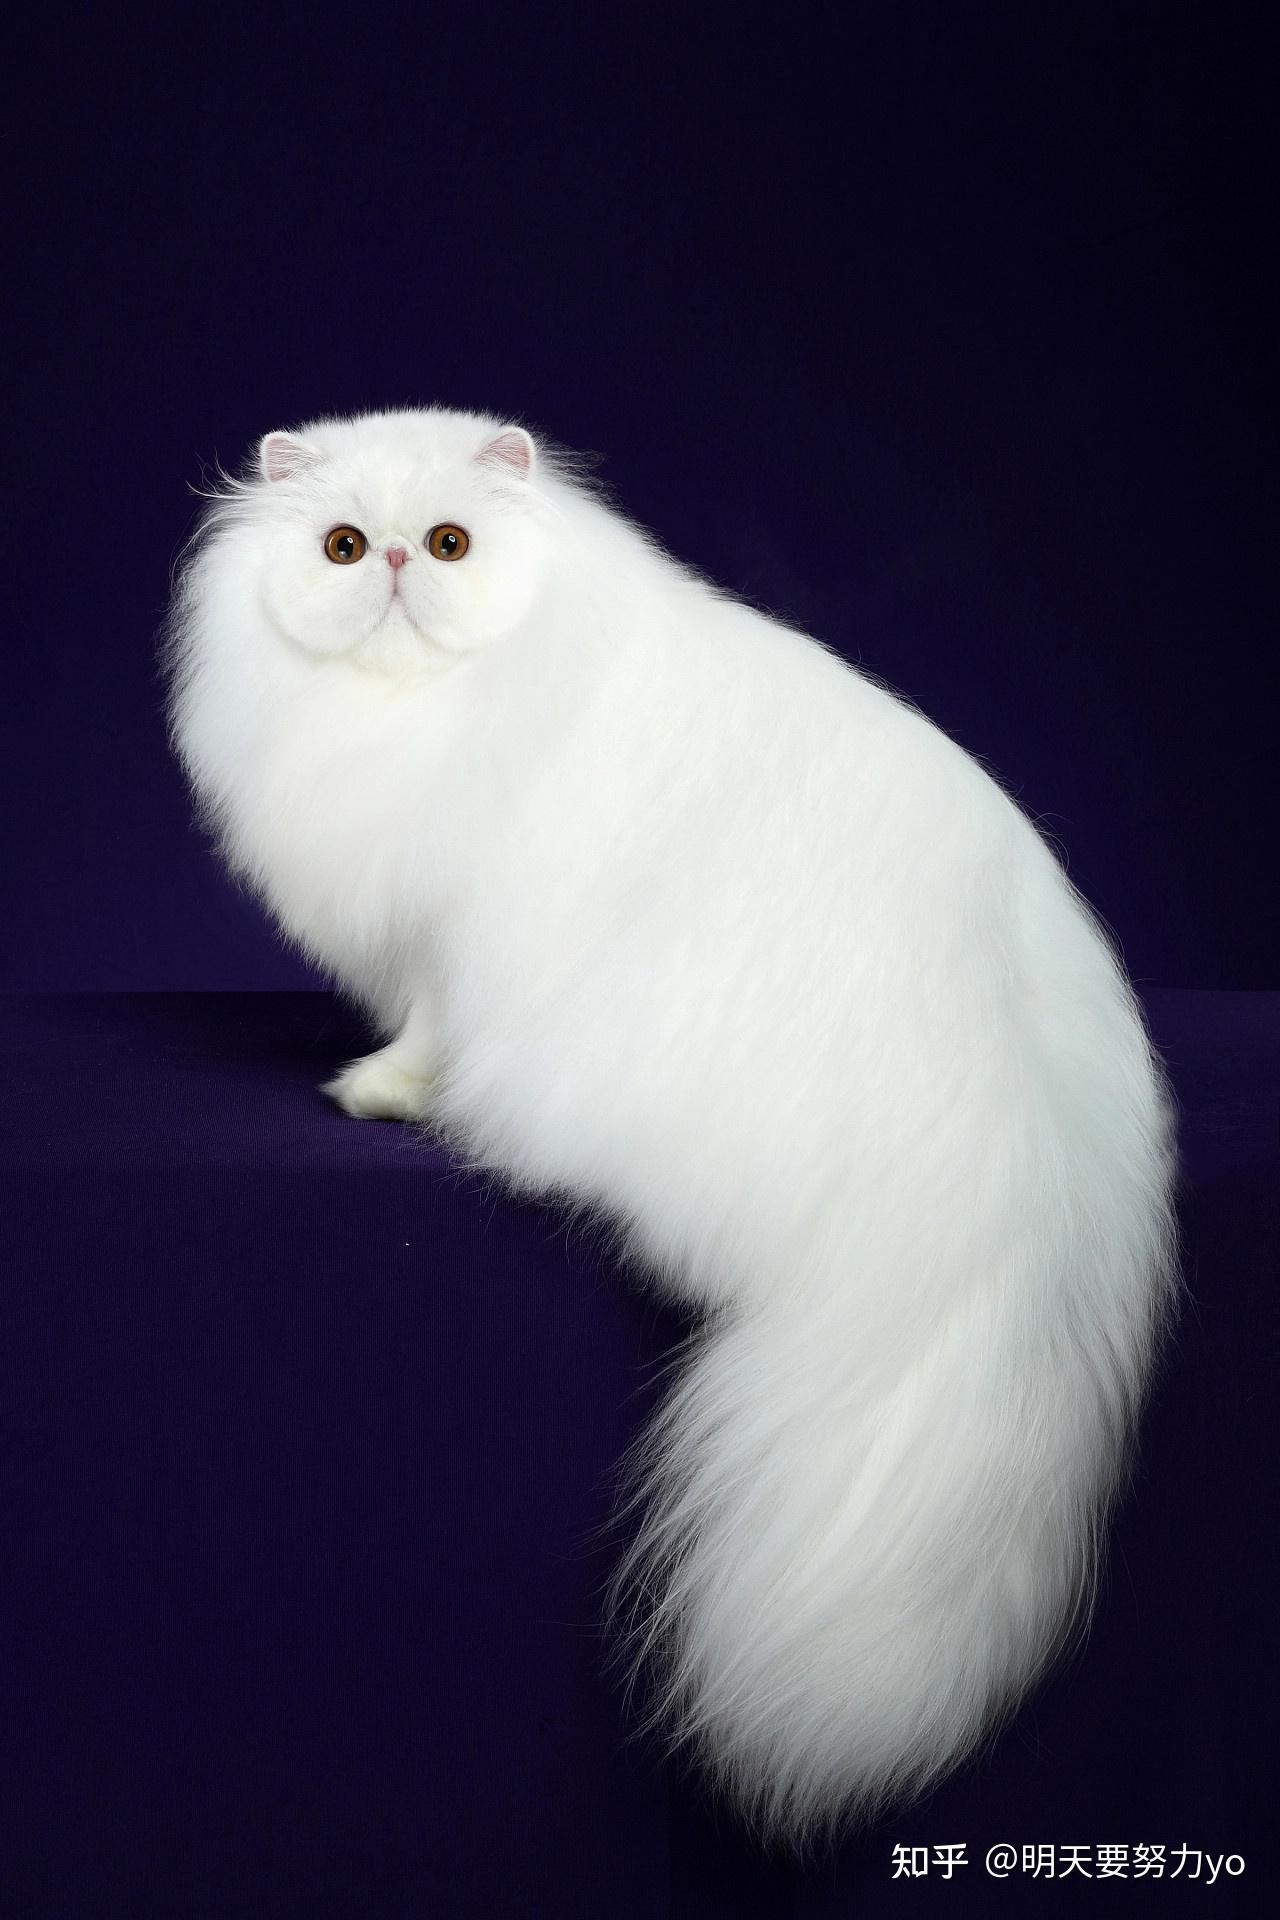 白猫图片大全,白猫壁纸 